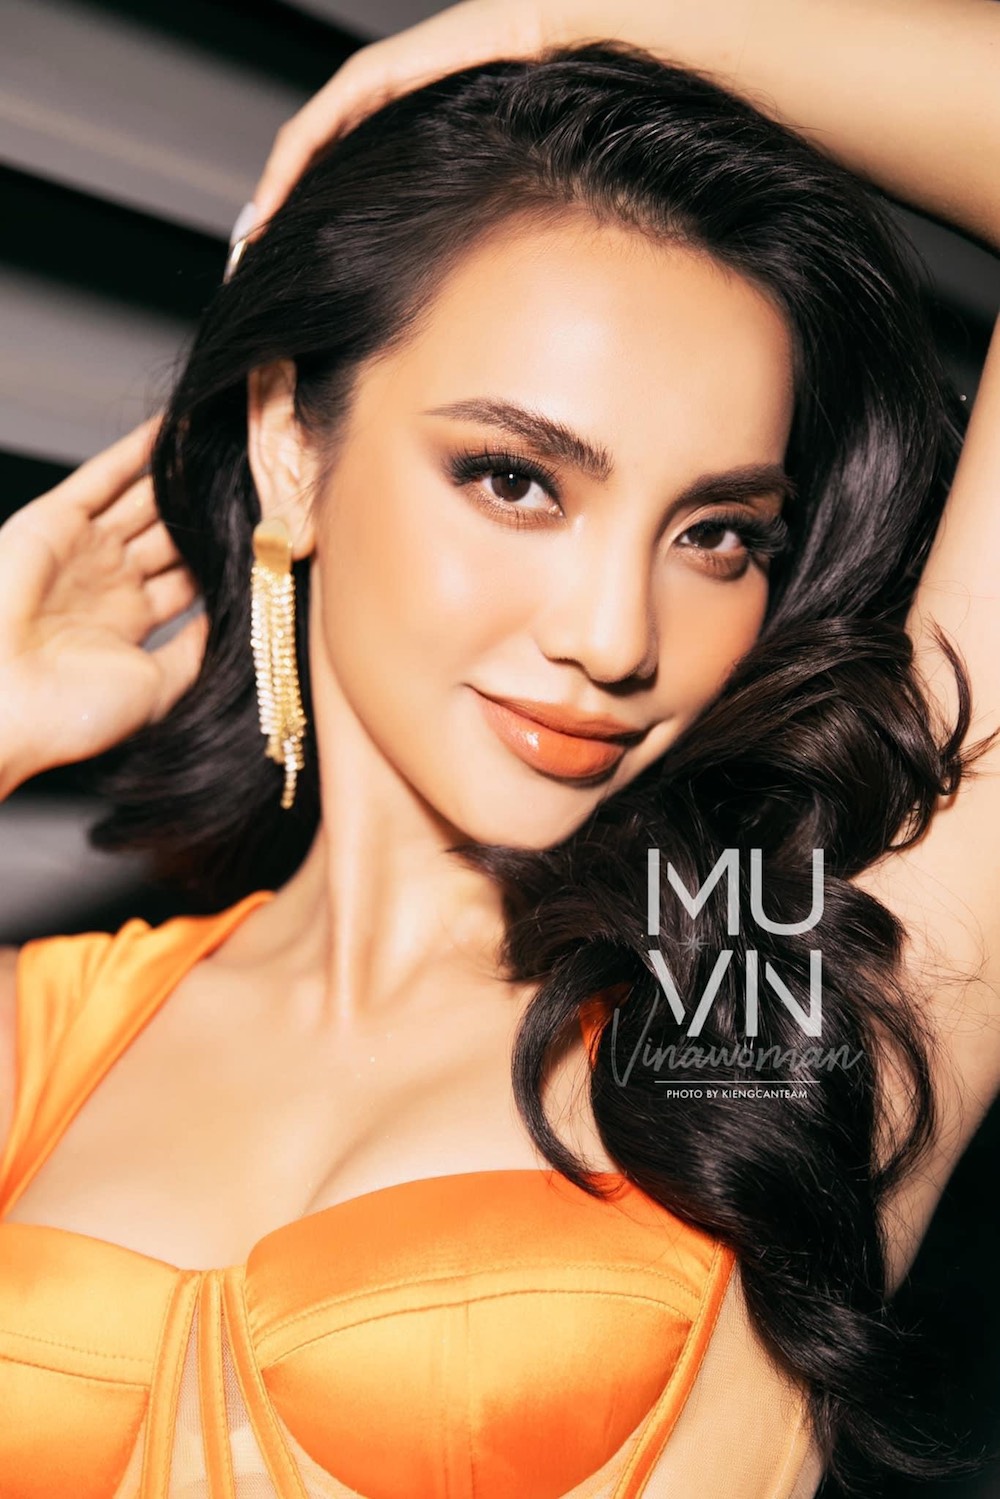 Bui Linh Chi 8 - Bùi Linh Chi, Người đẹp Truyền thông tại Hoa hậu Hoàn vũ Việt Nam 2022